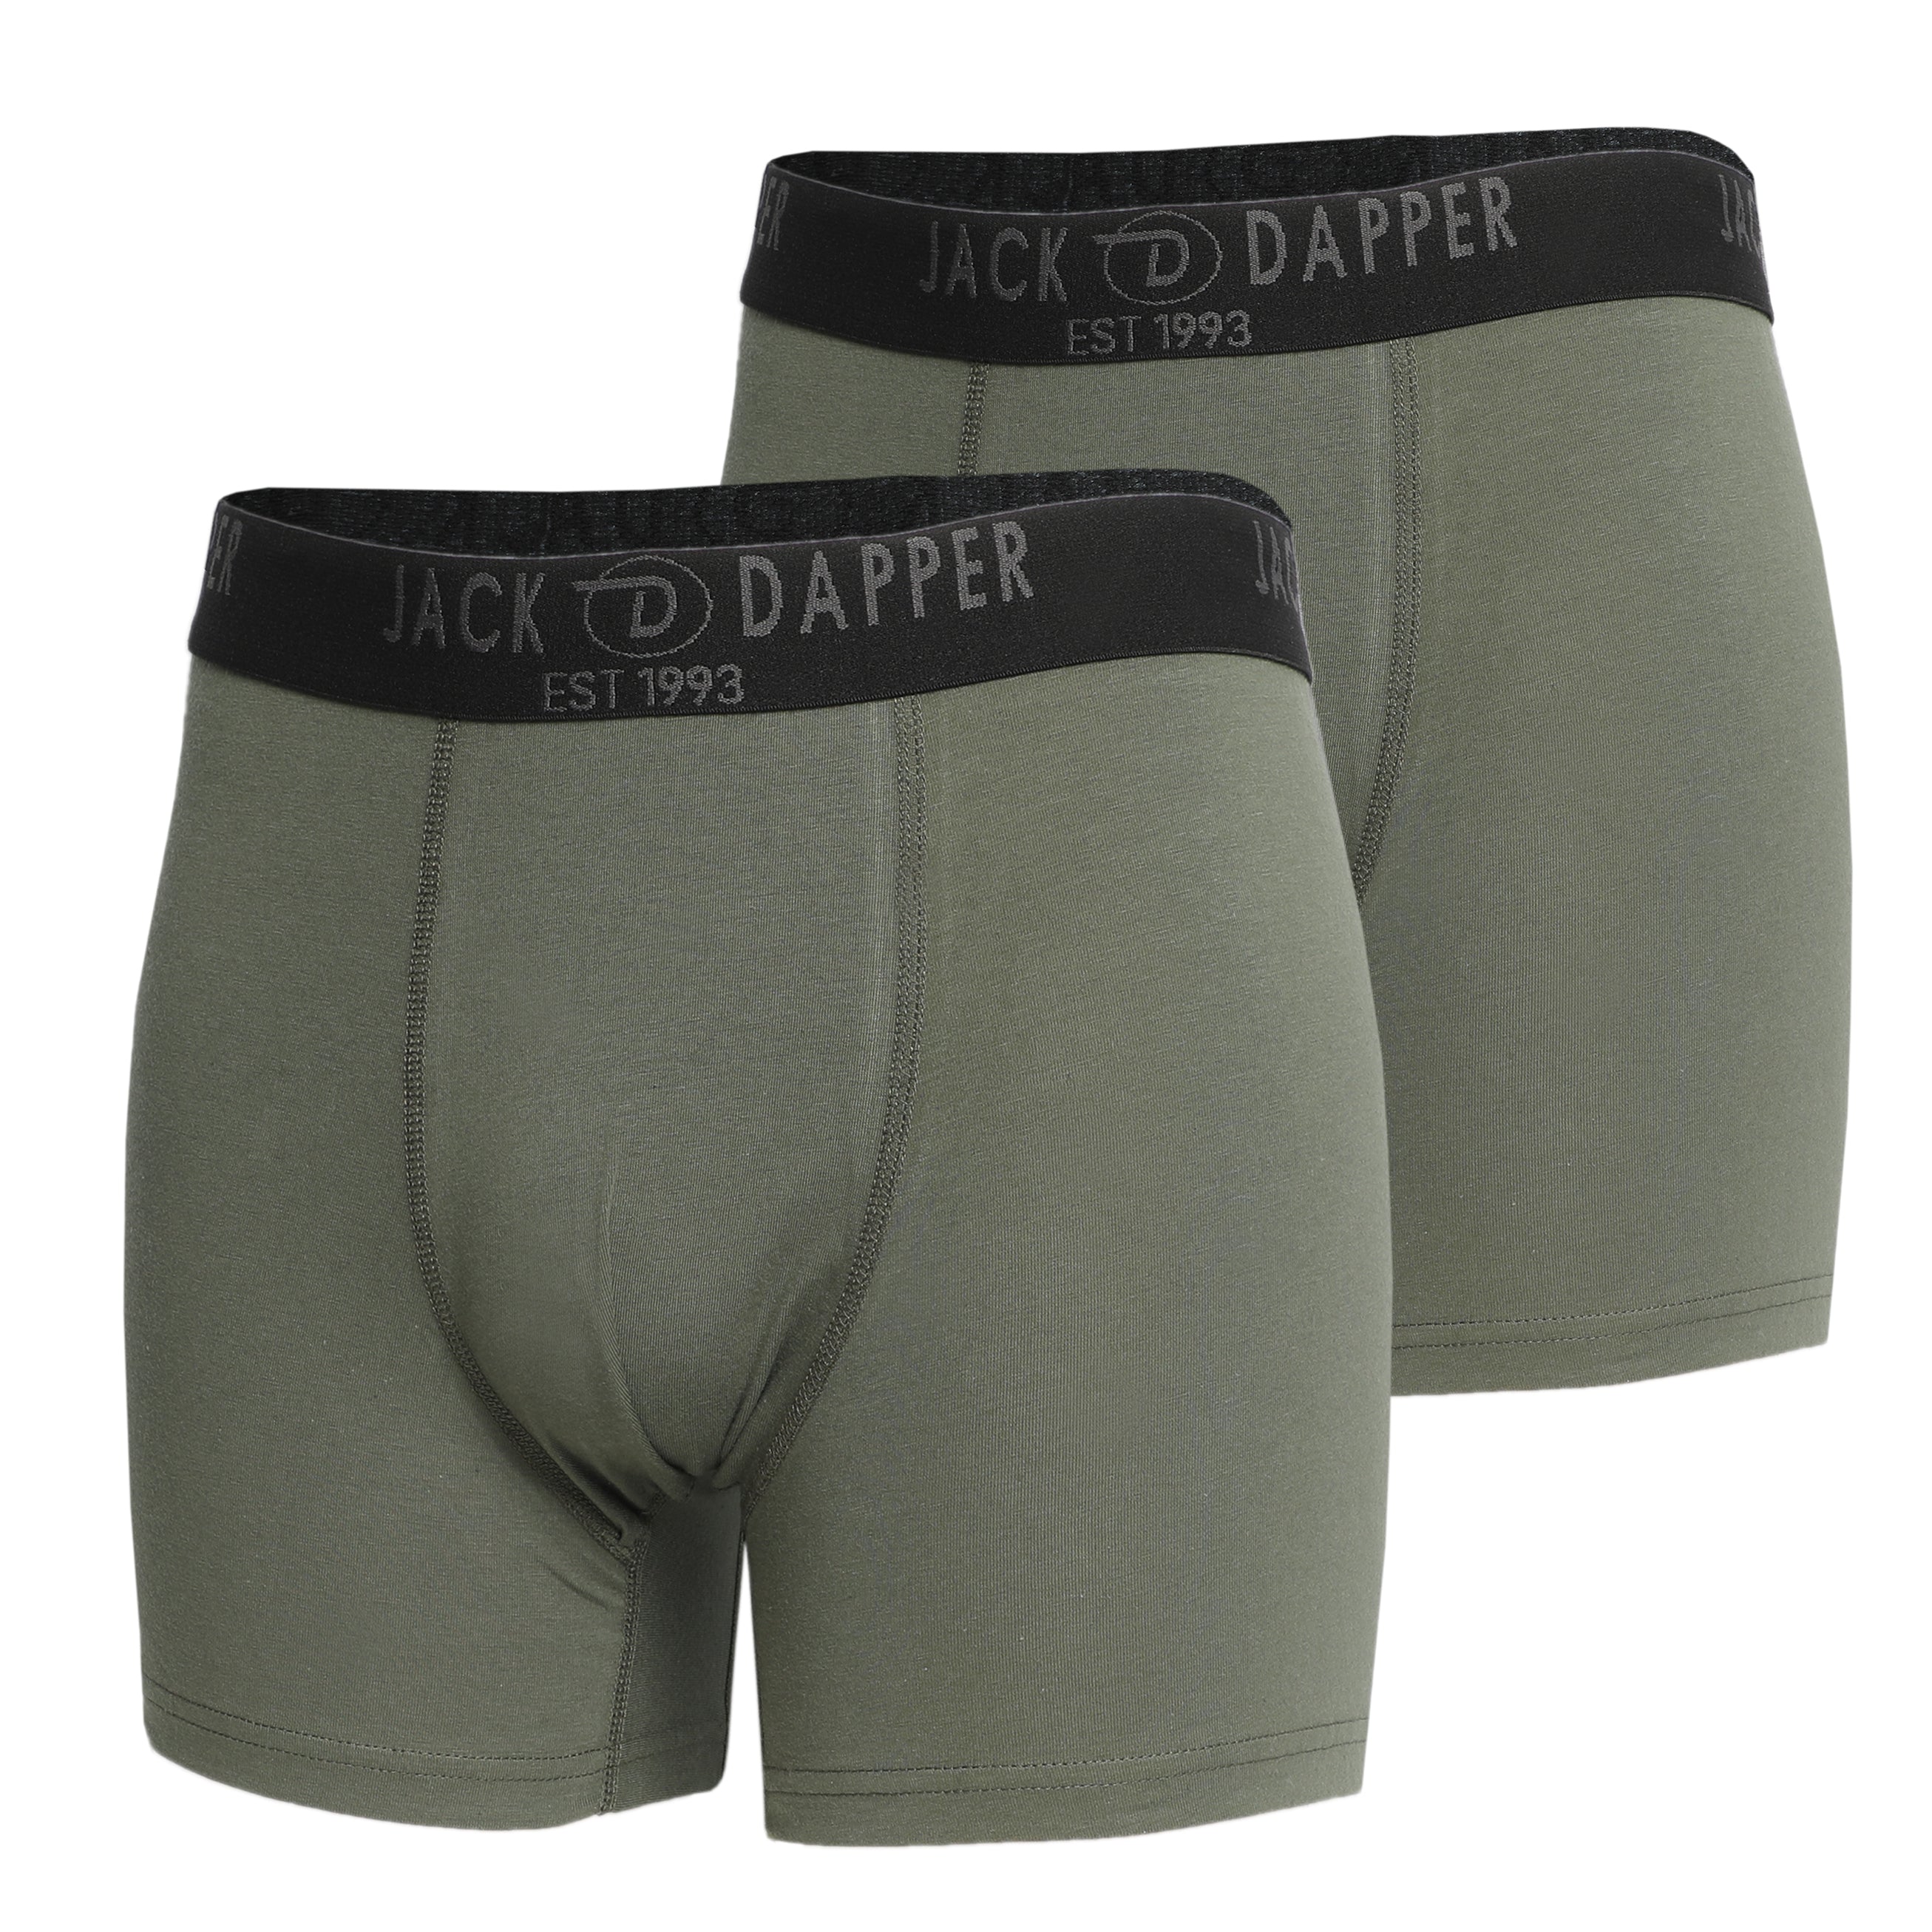 Jack Dapper Olive 2-Piece Cotton Underwear